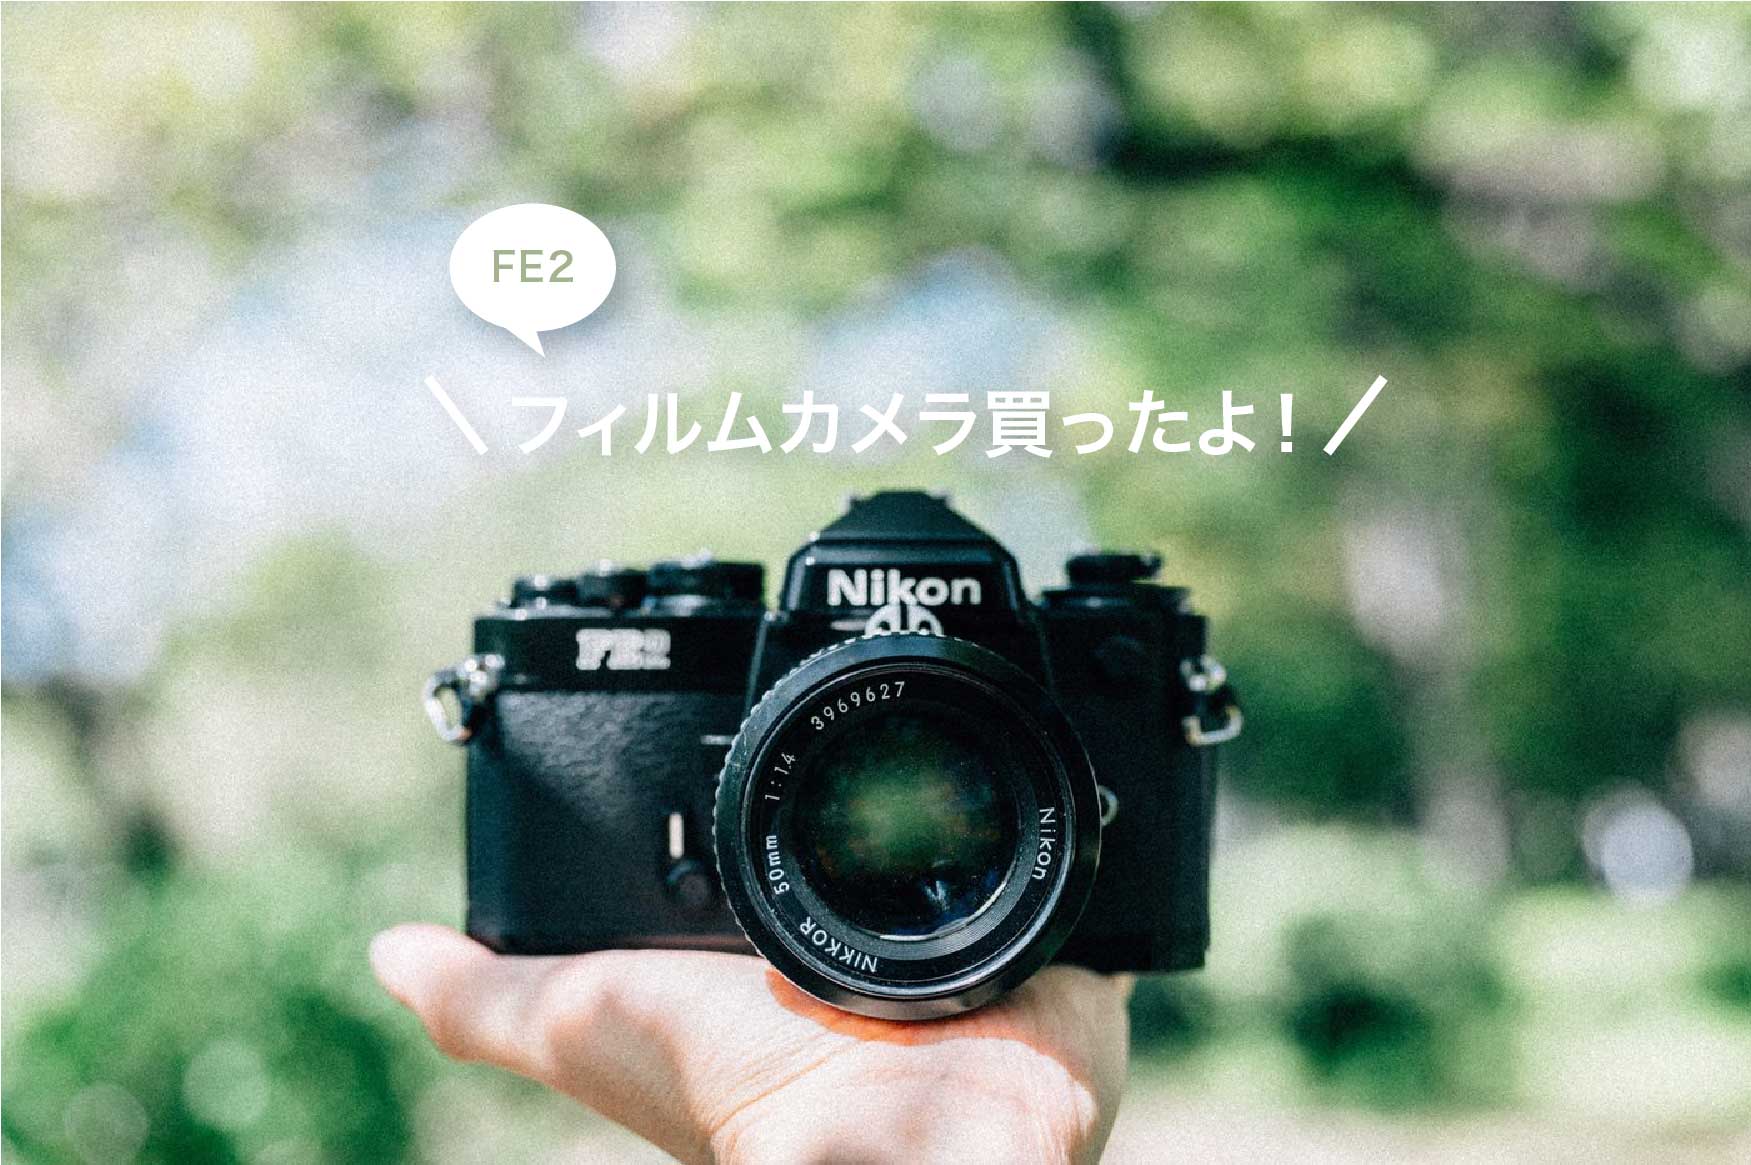 ニコンのフィルムカメラFE2を買いました！仕様や撮った写真を載せてみ